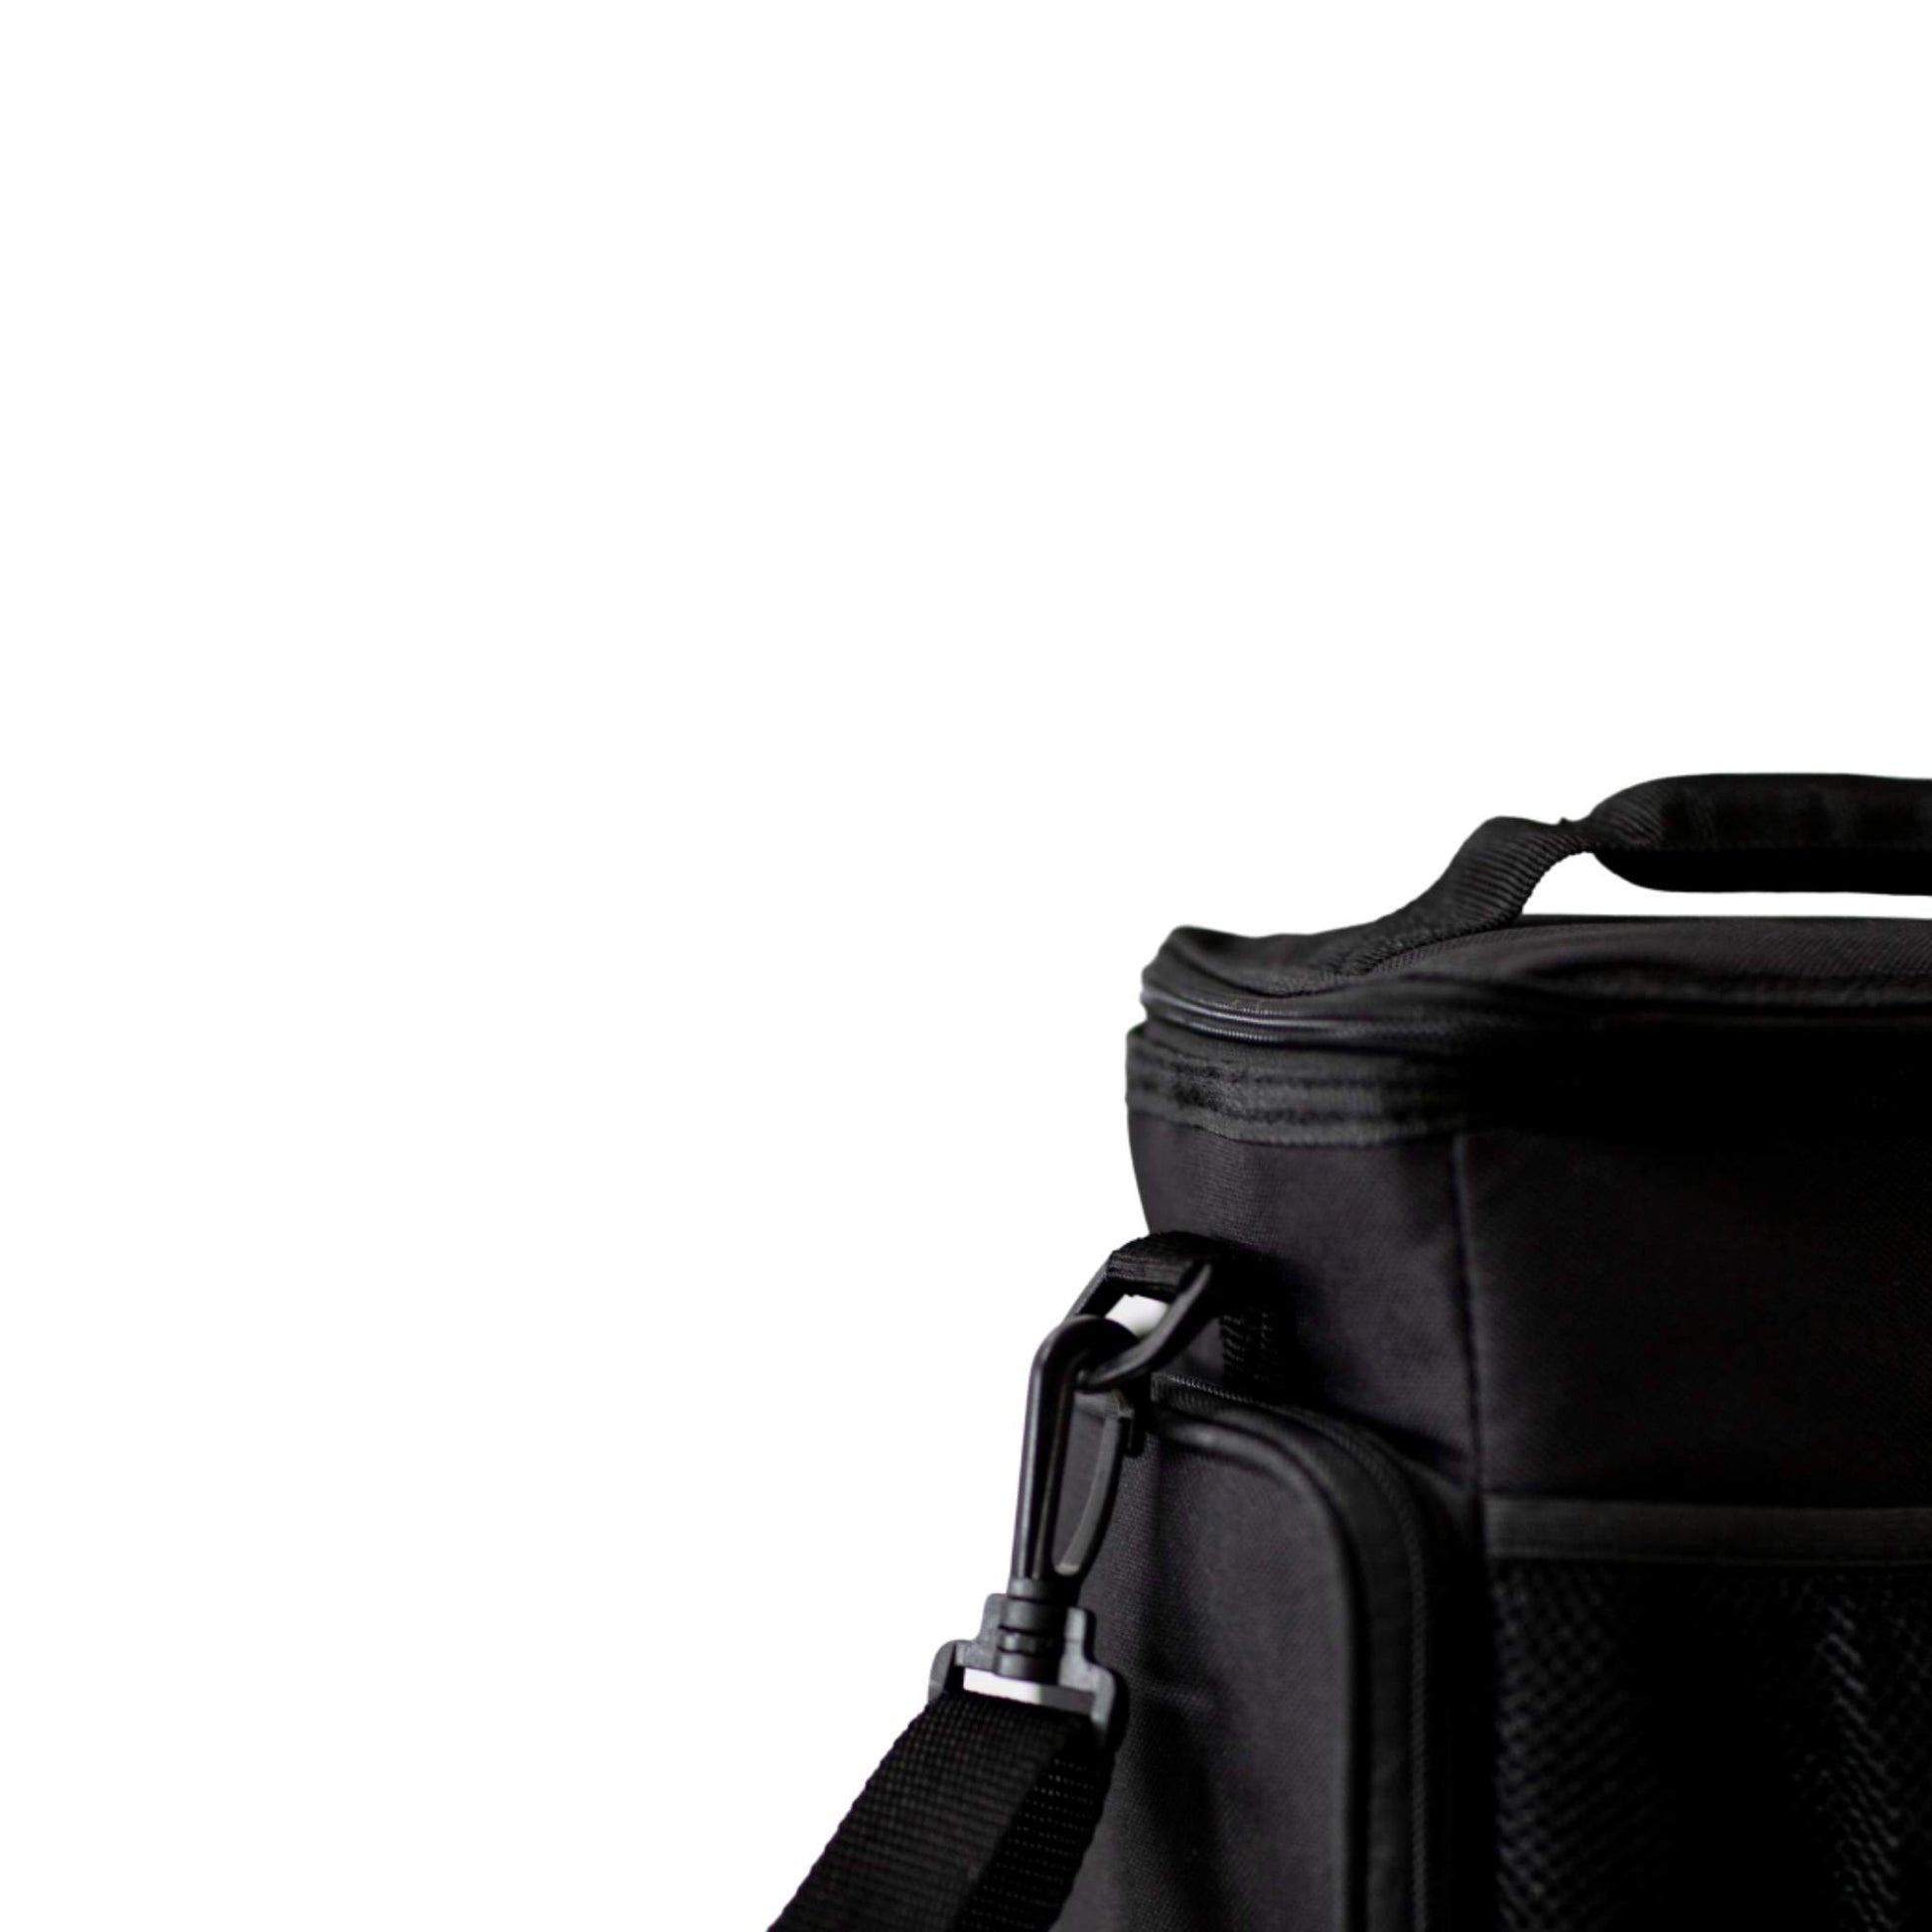 Performa - 3 Meal Cooler Bag, Removable Shoulder Strap, Black, Team Perfect